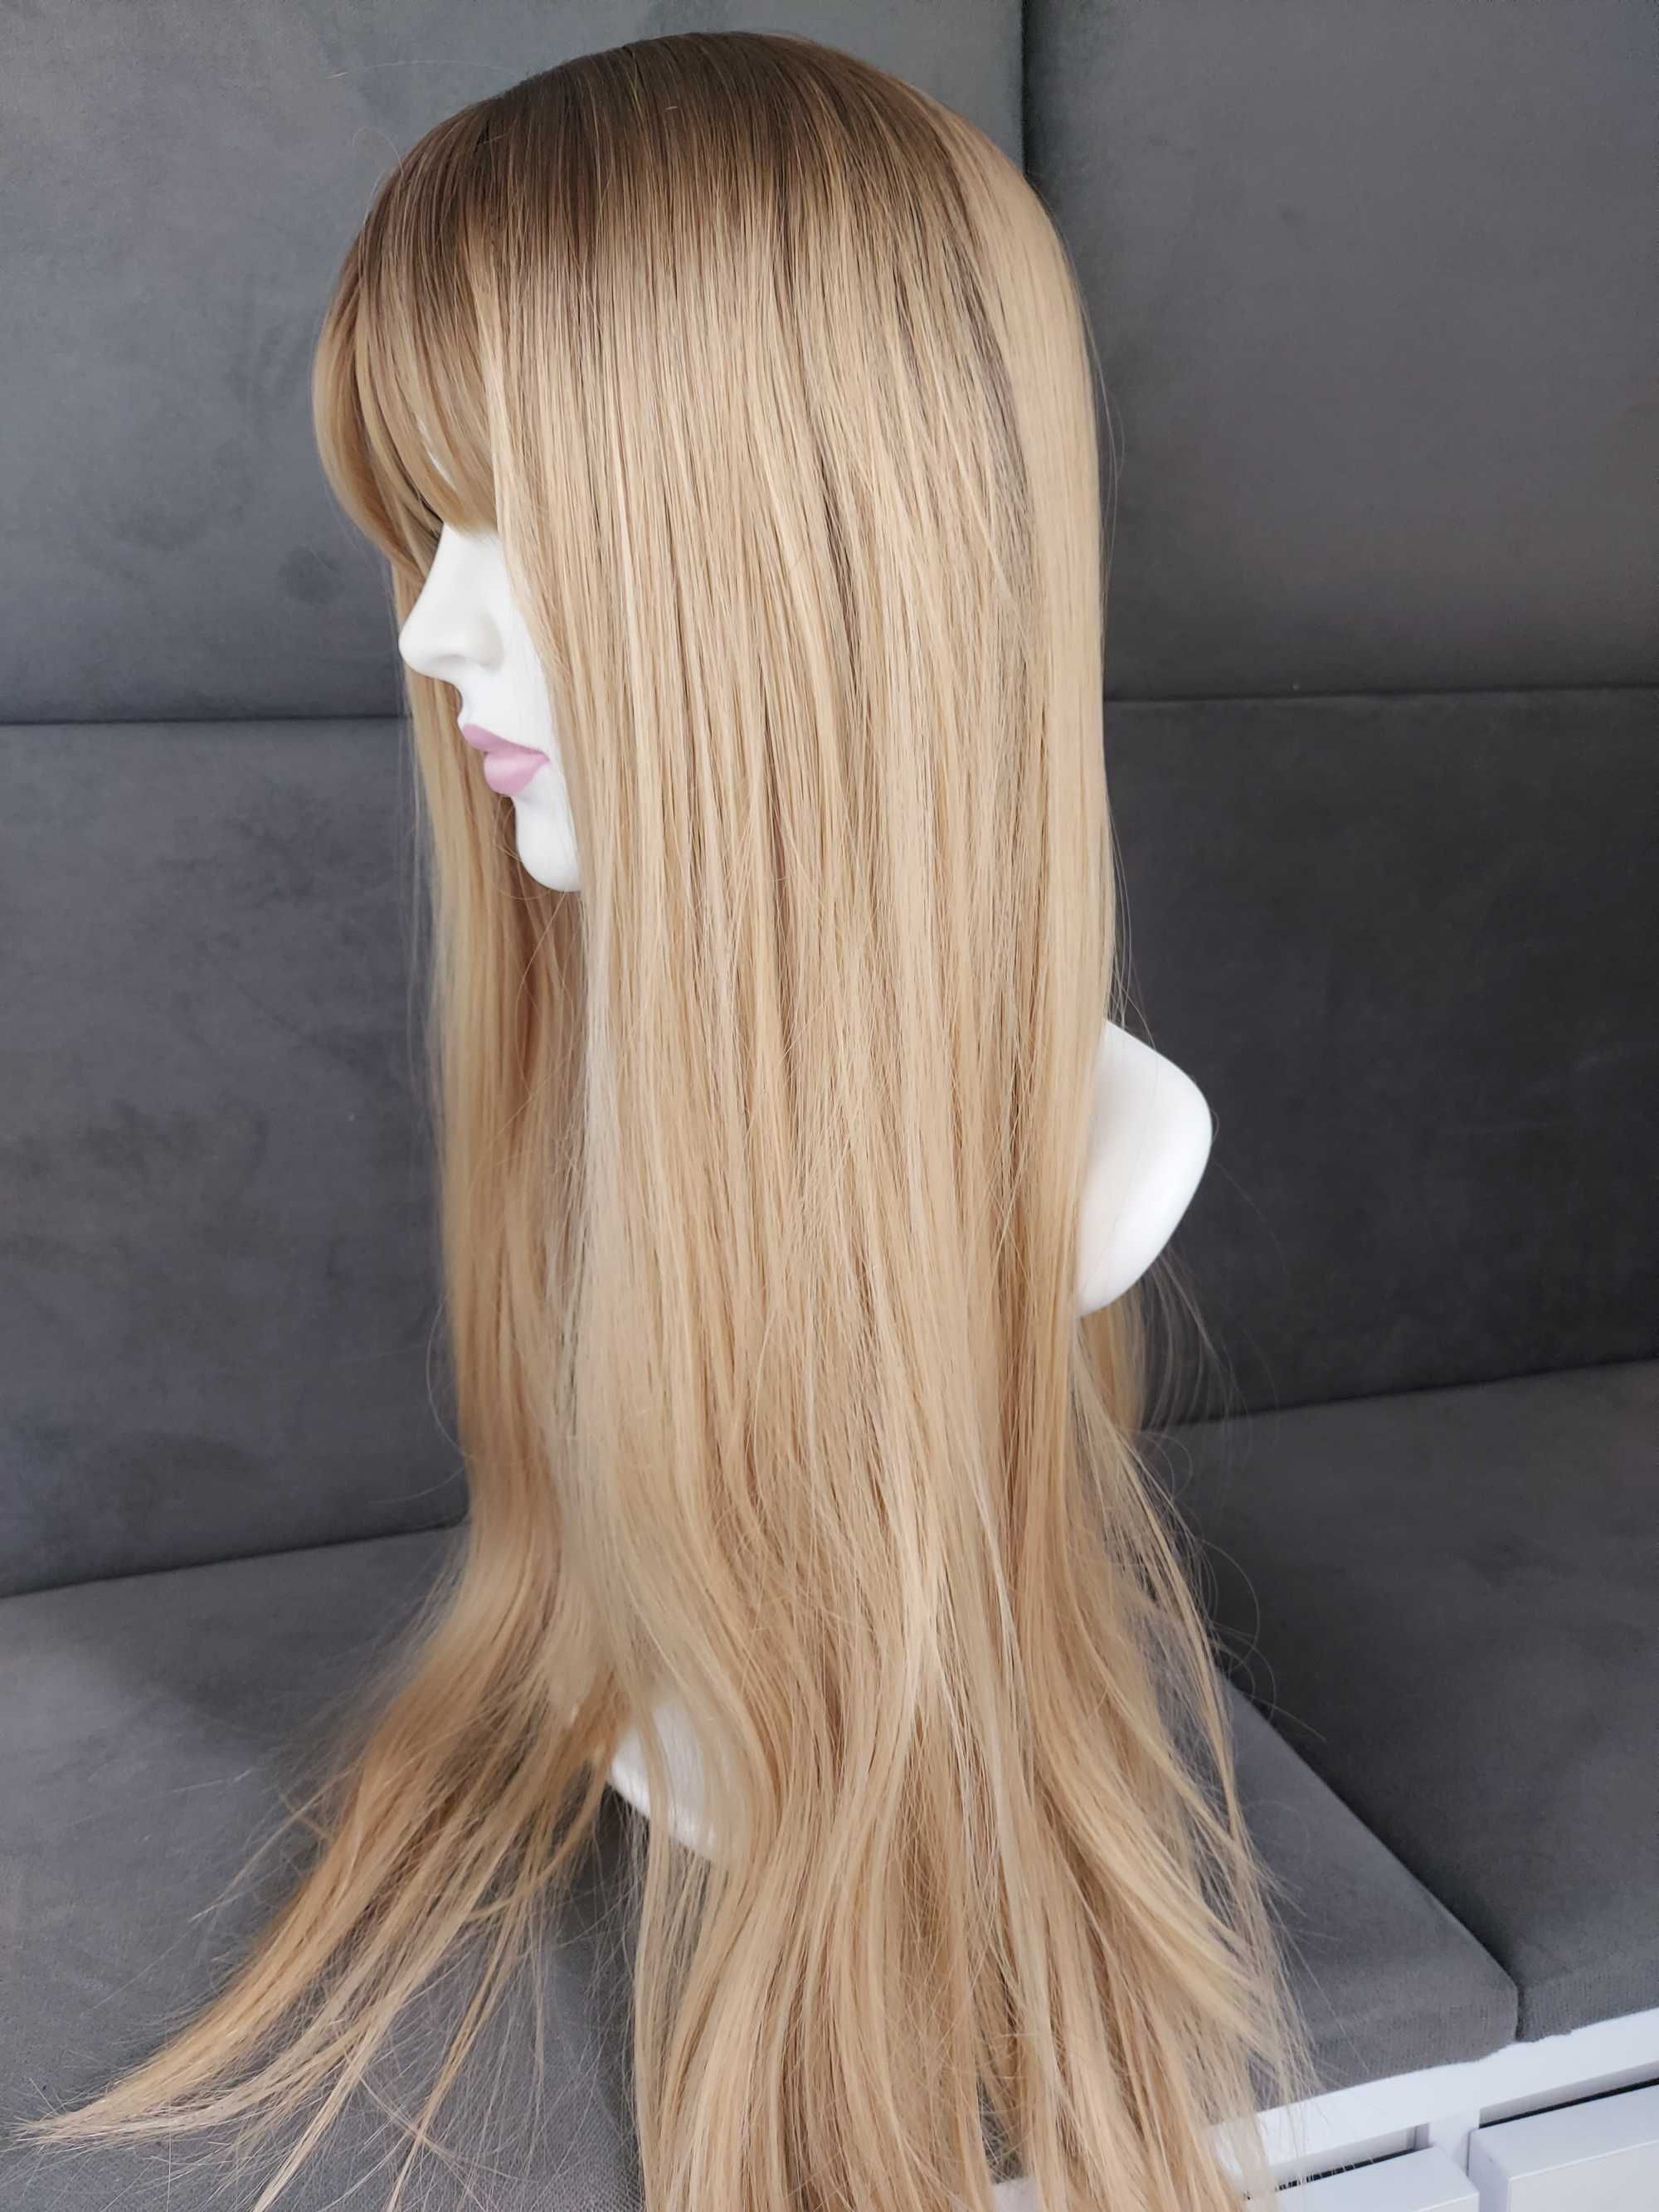 Nowa peruka blond długa 70 cm ciemny miodowy odcień proste włosy